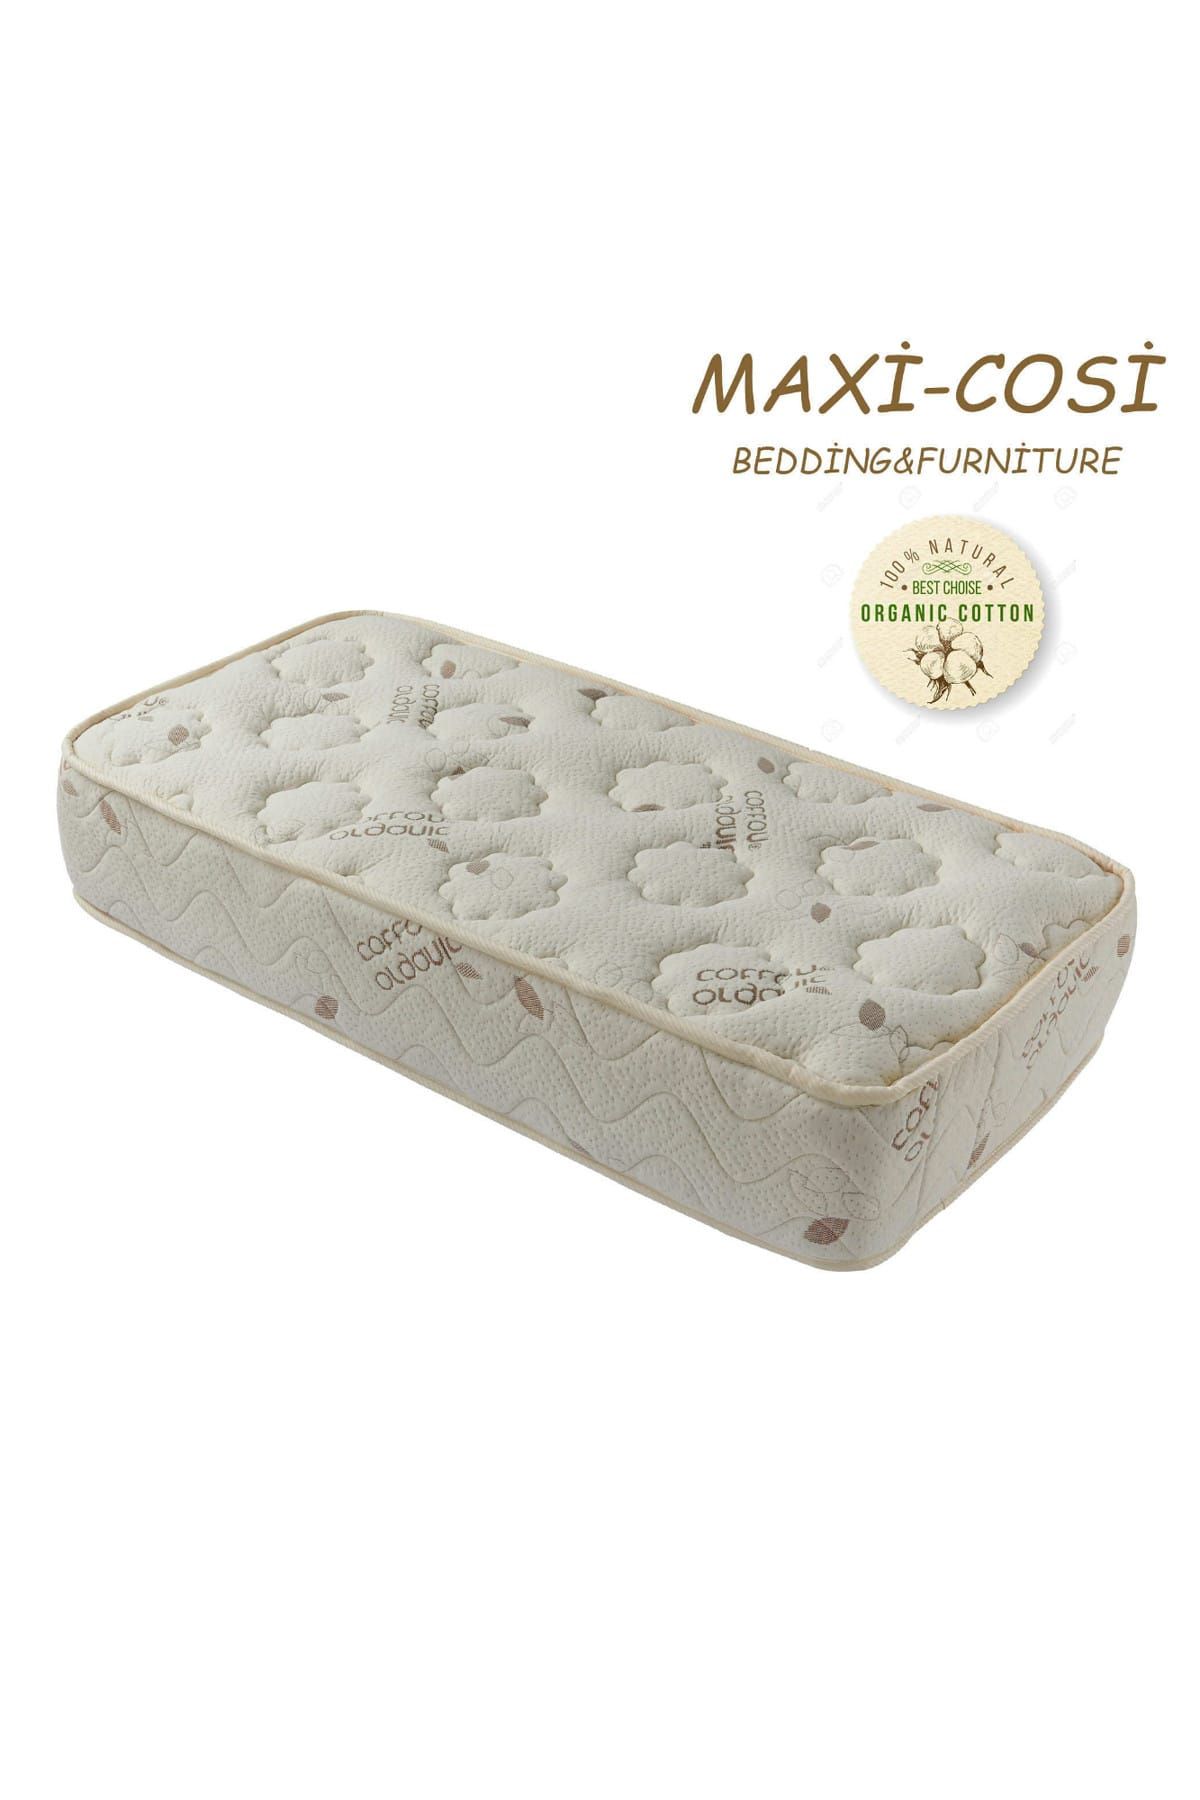 Maxi-Cosi Maxi-Cosi Organik Cotton 120x200 Cm ortopedik Yaylı Yatak